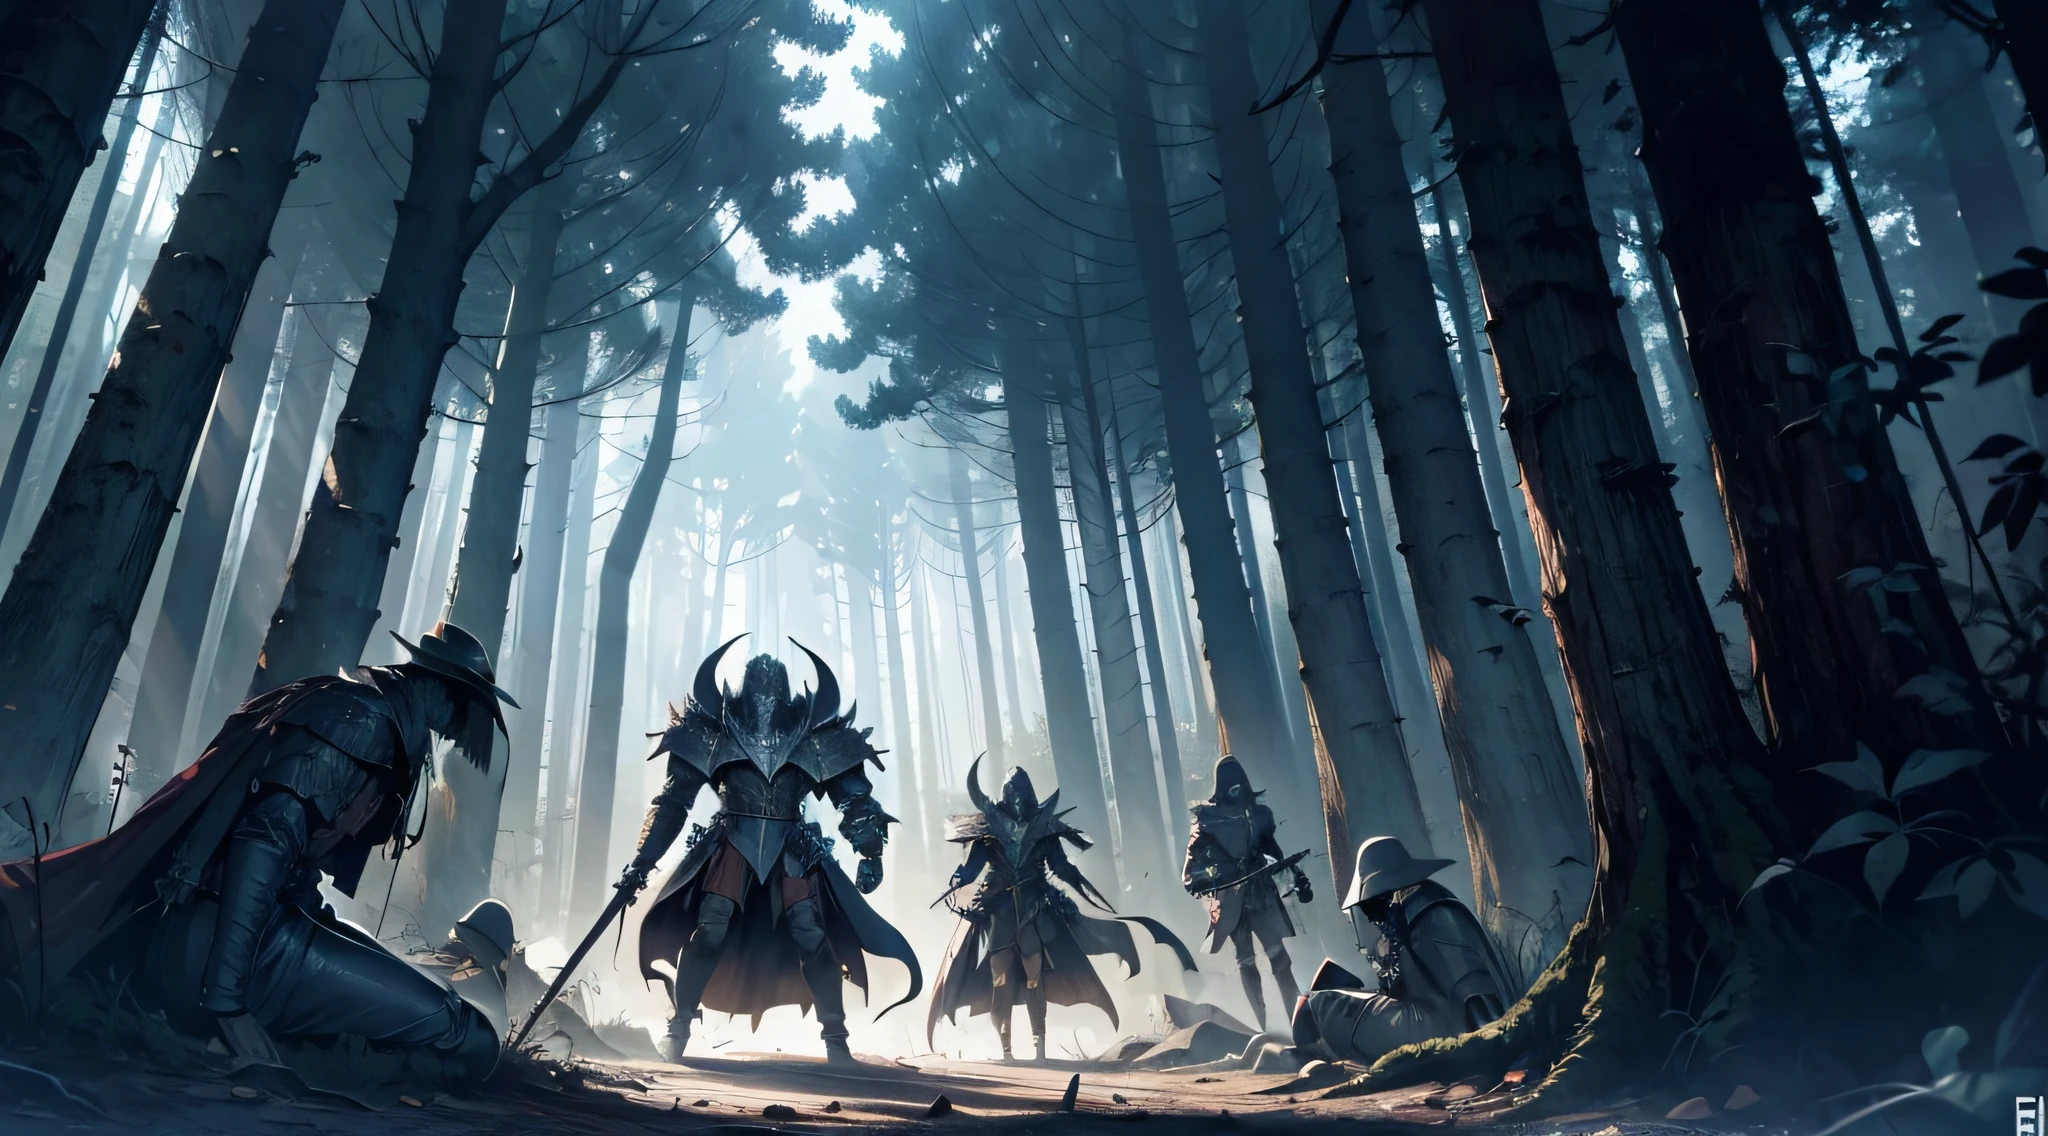 6 名死去的骑士全都倒在地上，肢体残缺, 在一片黑暗的森林里, 有一个精灵生物在他们之上, 漫画绘画, 漫画阴影, 4k, 狂暴艺术